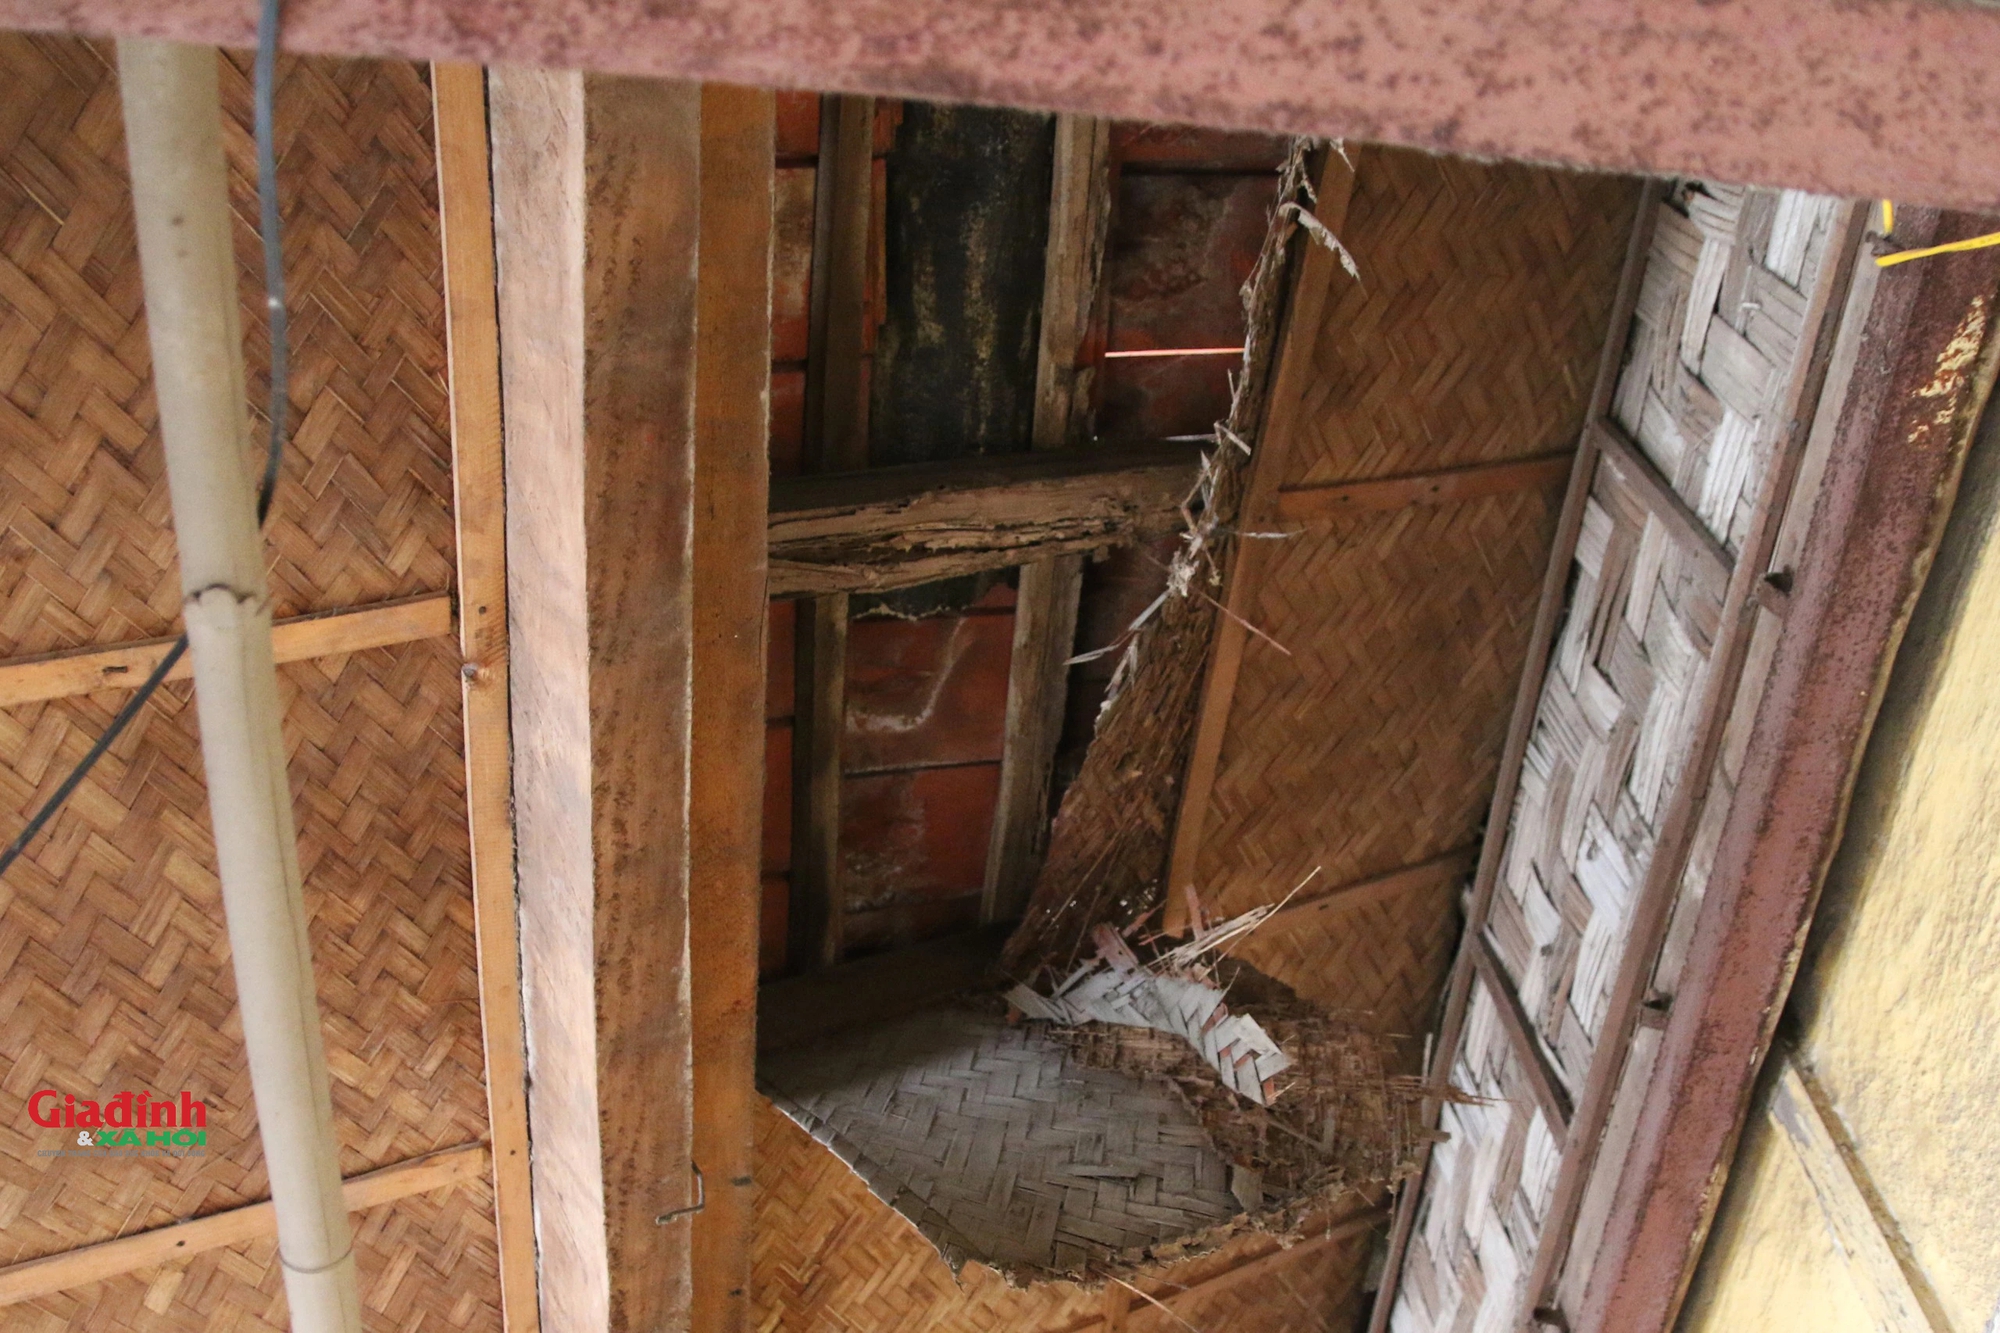 Cuộc sống của người dân bên trong khu tập thể bằng gỗ 70 tuổi 'chờ sập' ở Hà Nội - Ảnh 11.